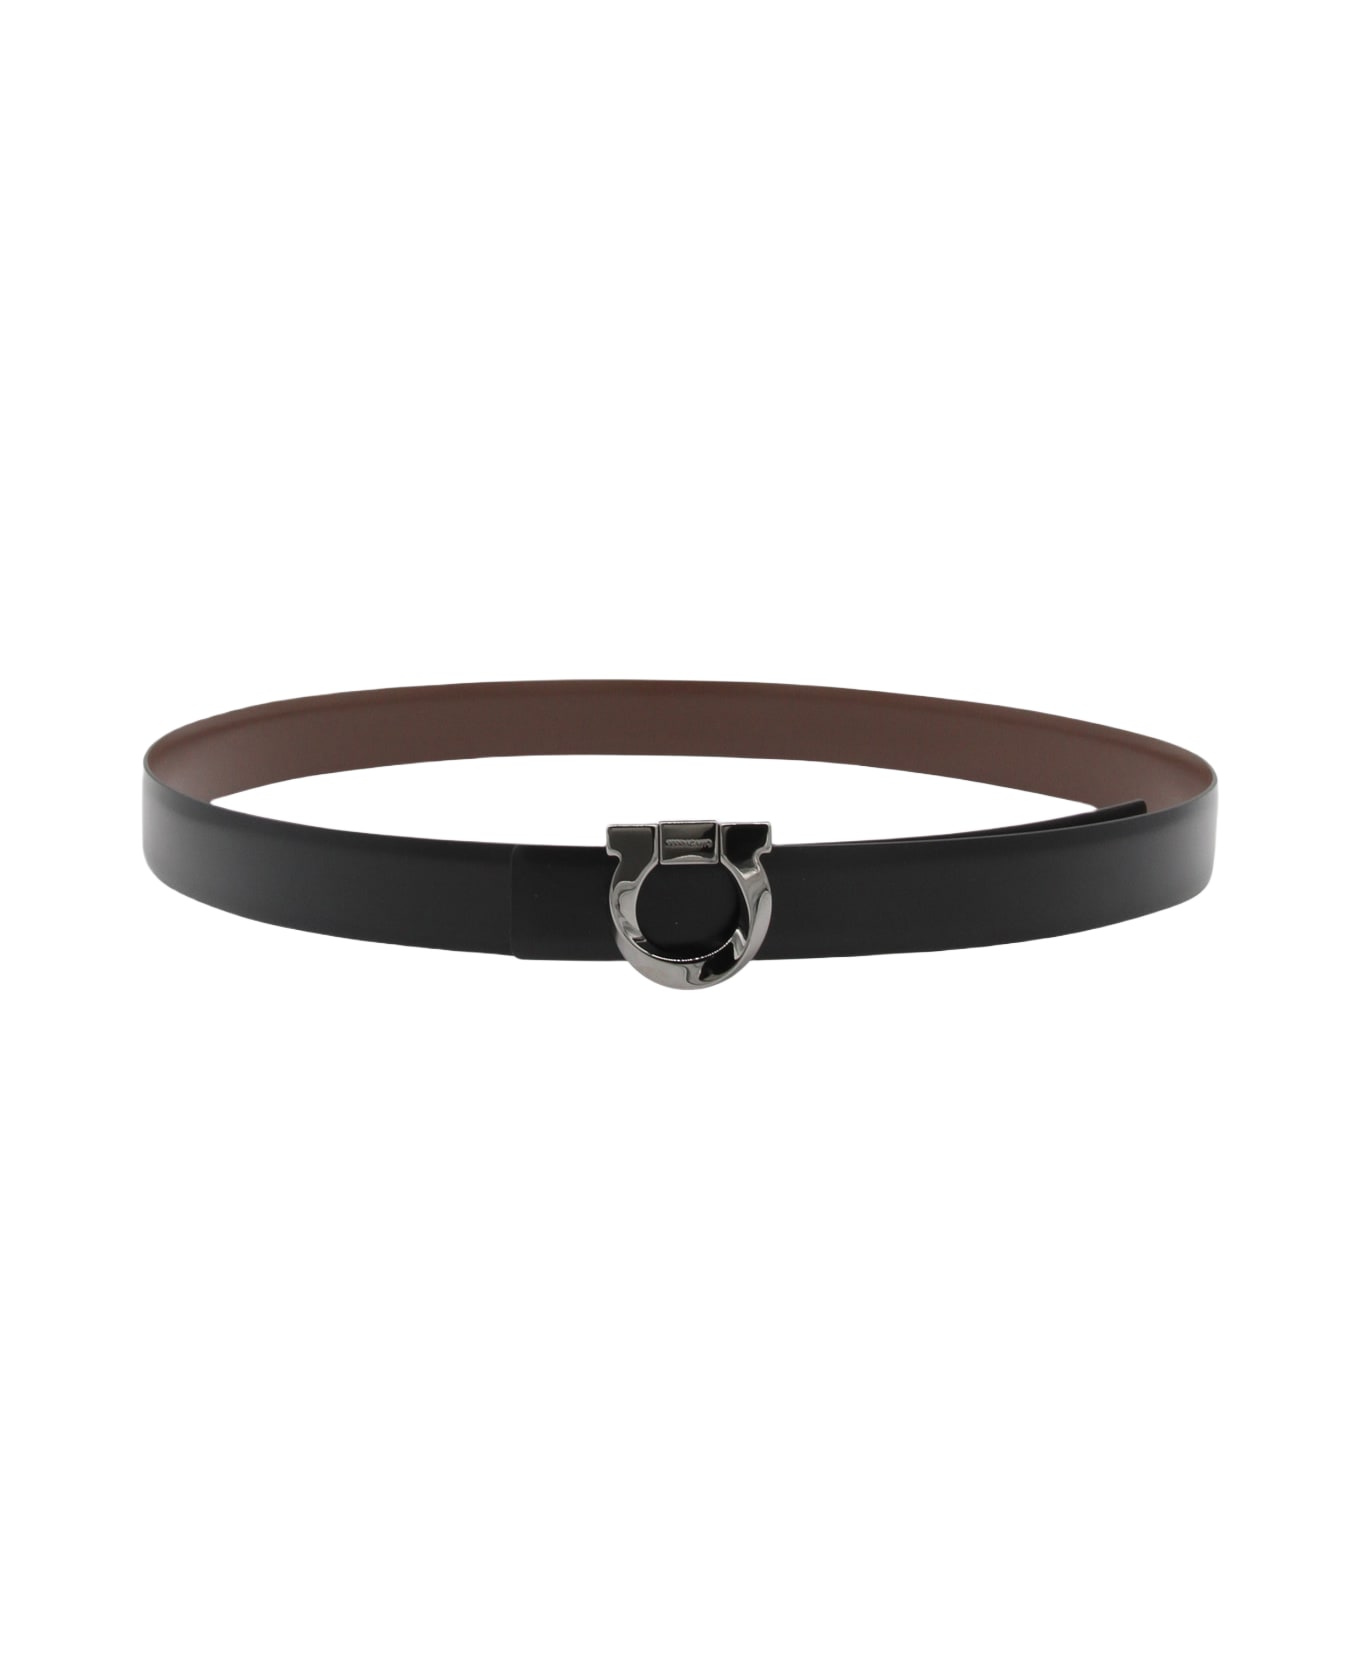 Ferragamo Black Leather Belt - Black/Cocoa Brown